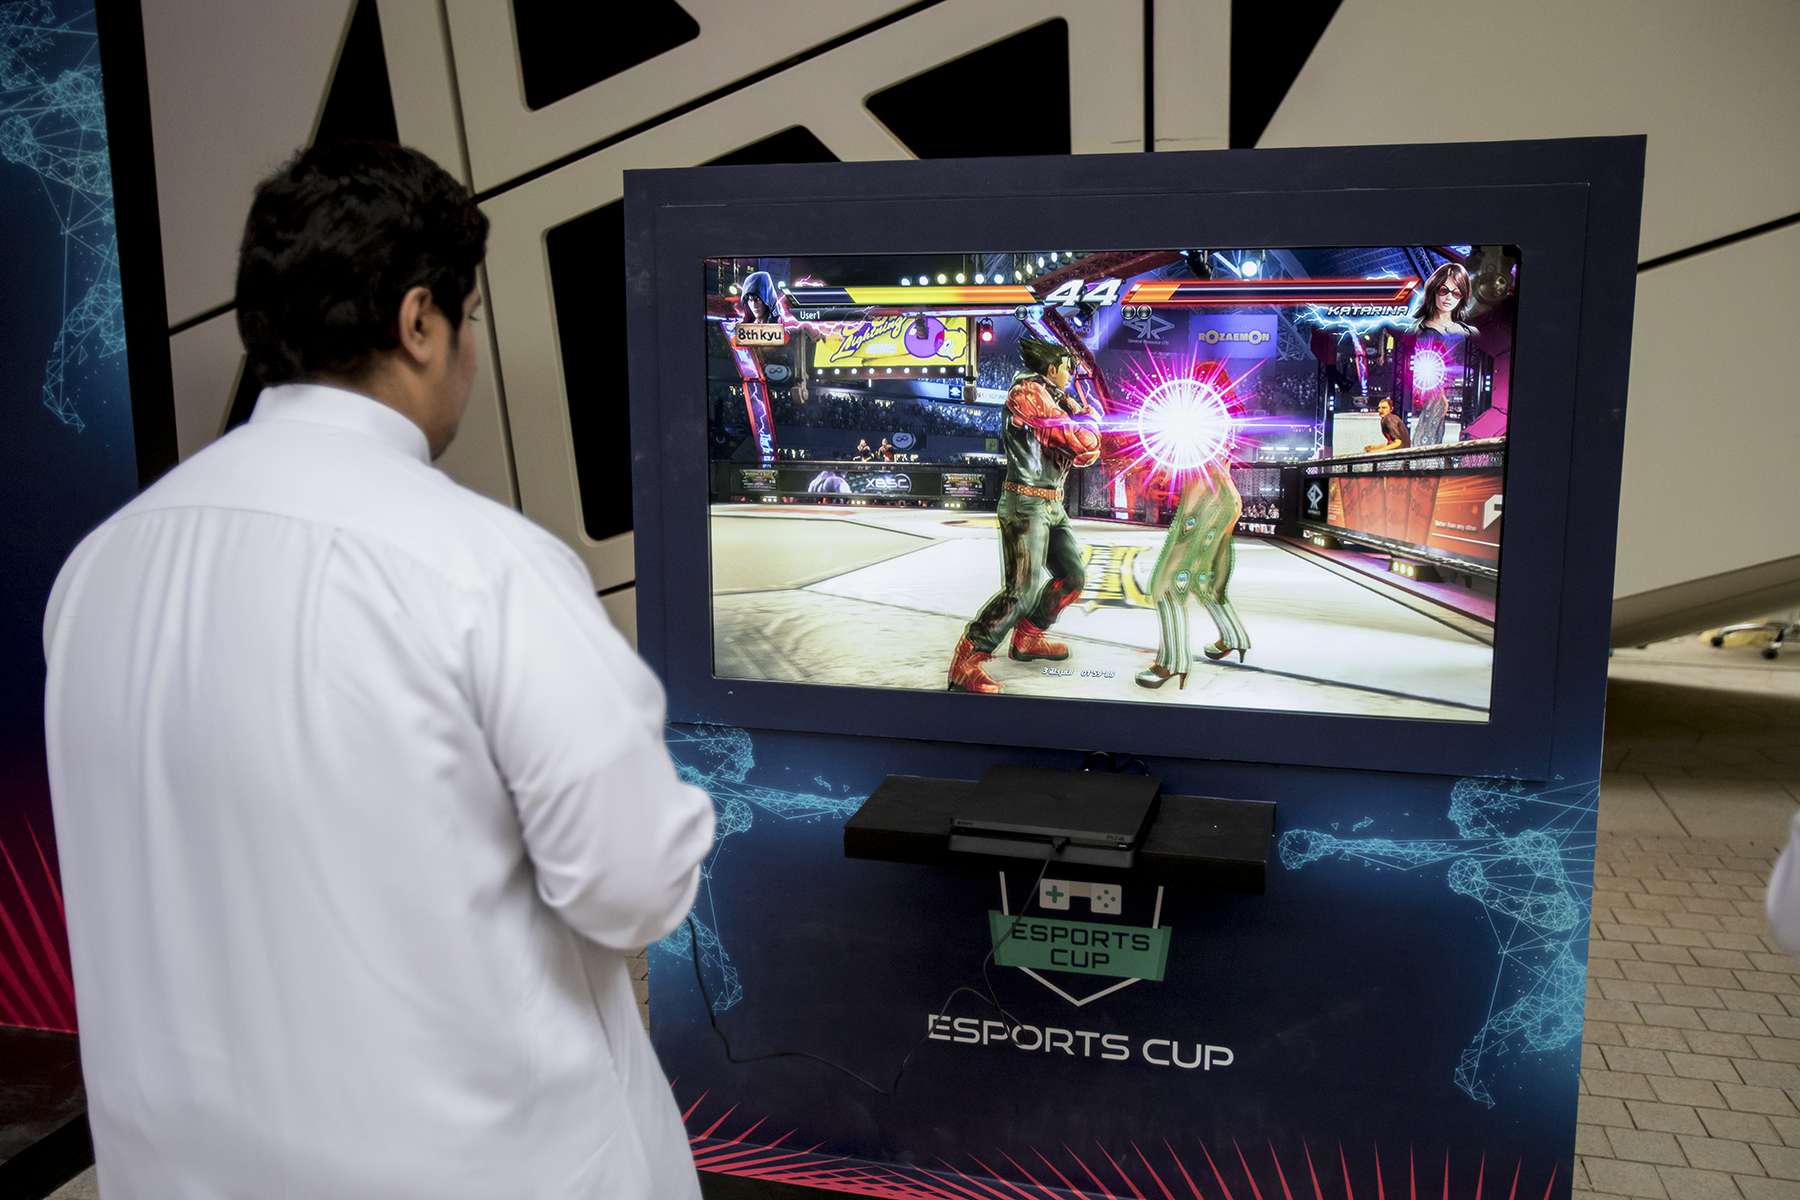 21 مليون سعودي قرابة ثلثي إجمالي السكان ينتمون للرياضة الالكترونية ويعتبرون أنفسهم لاعبين